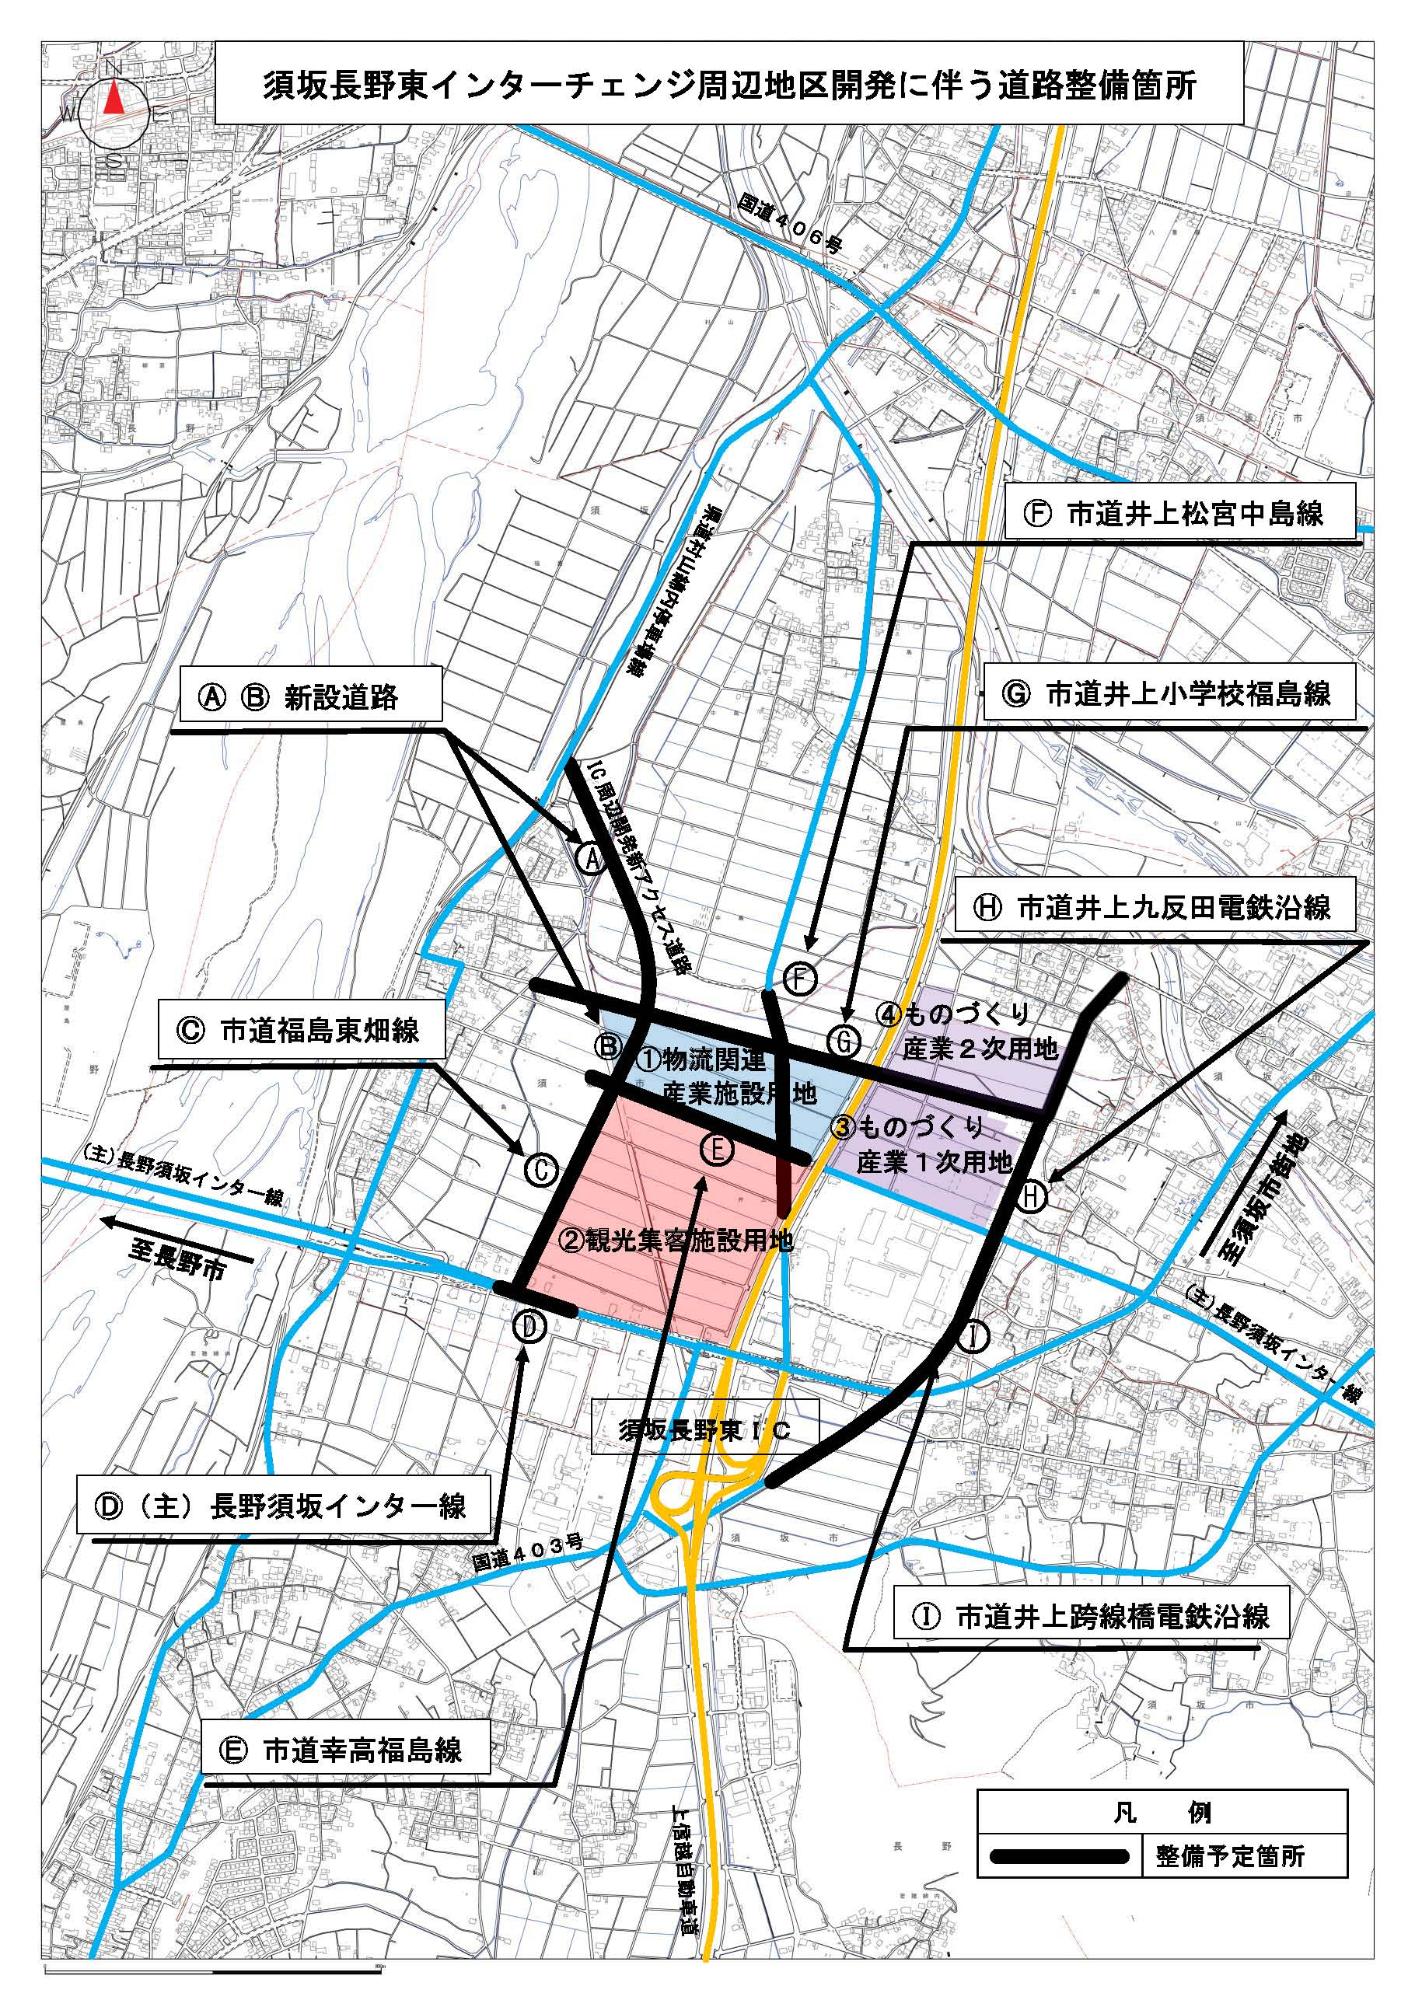 AからIまでの道路整備箇所が記された地図